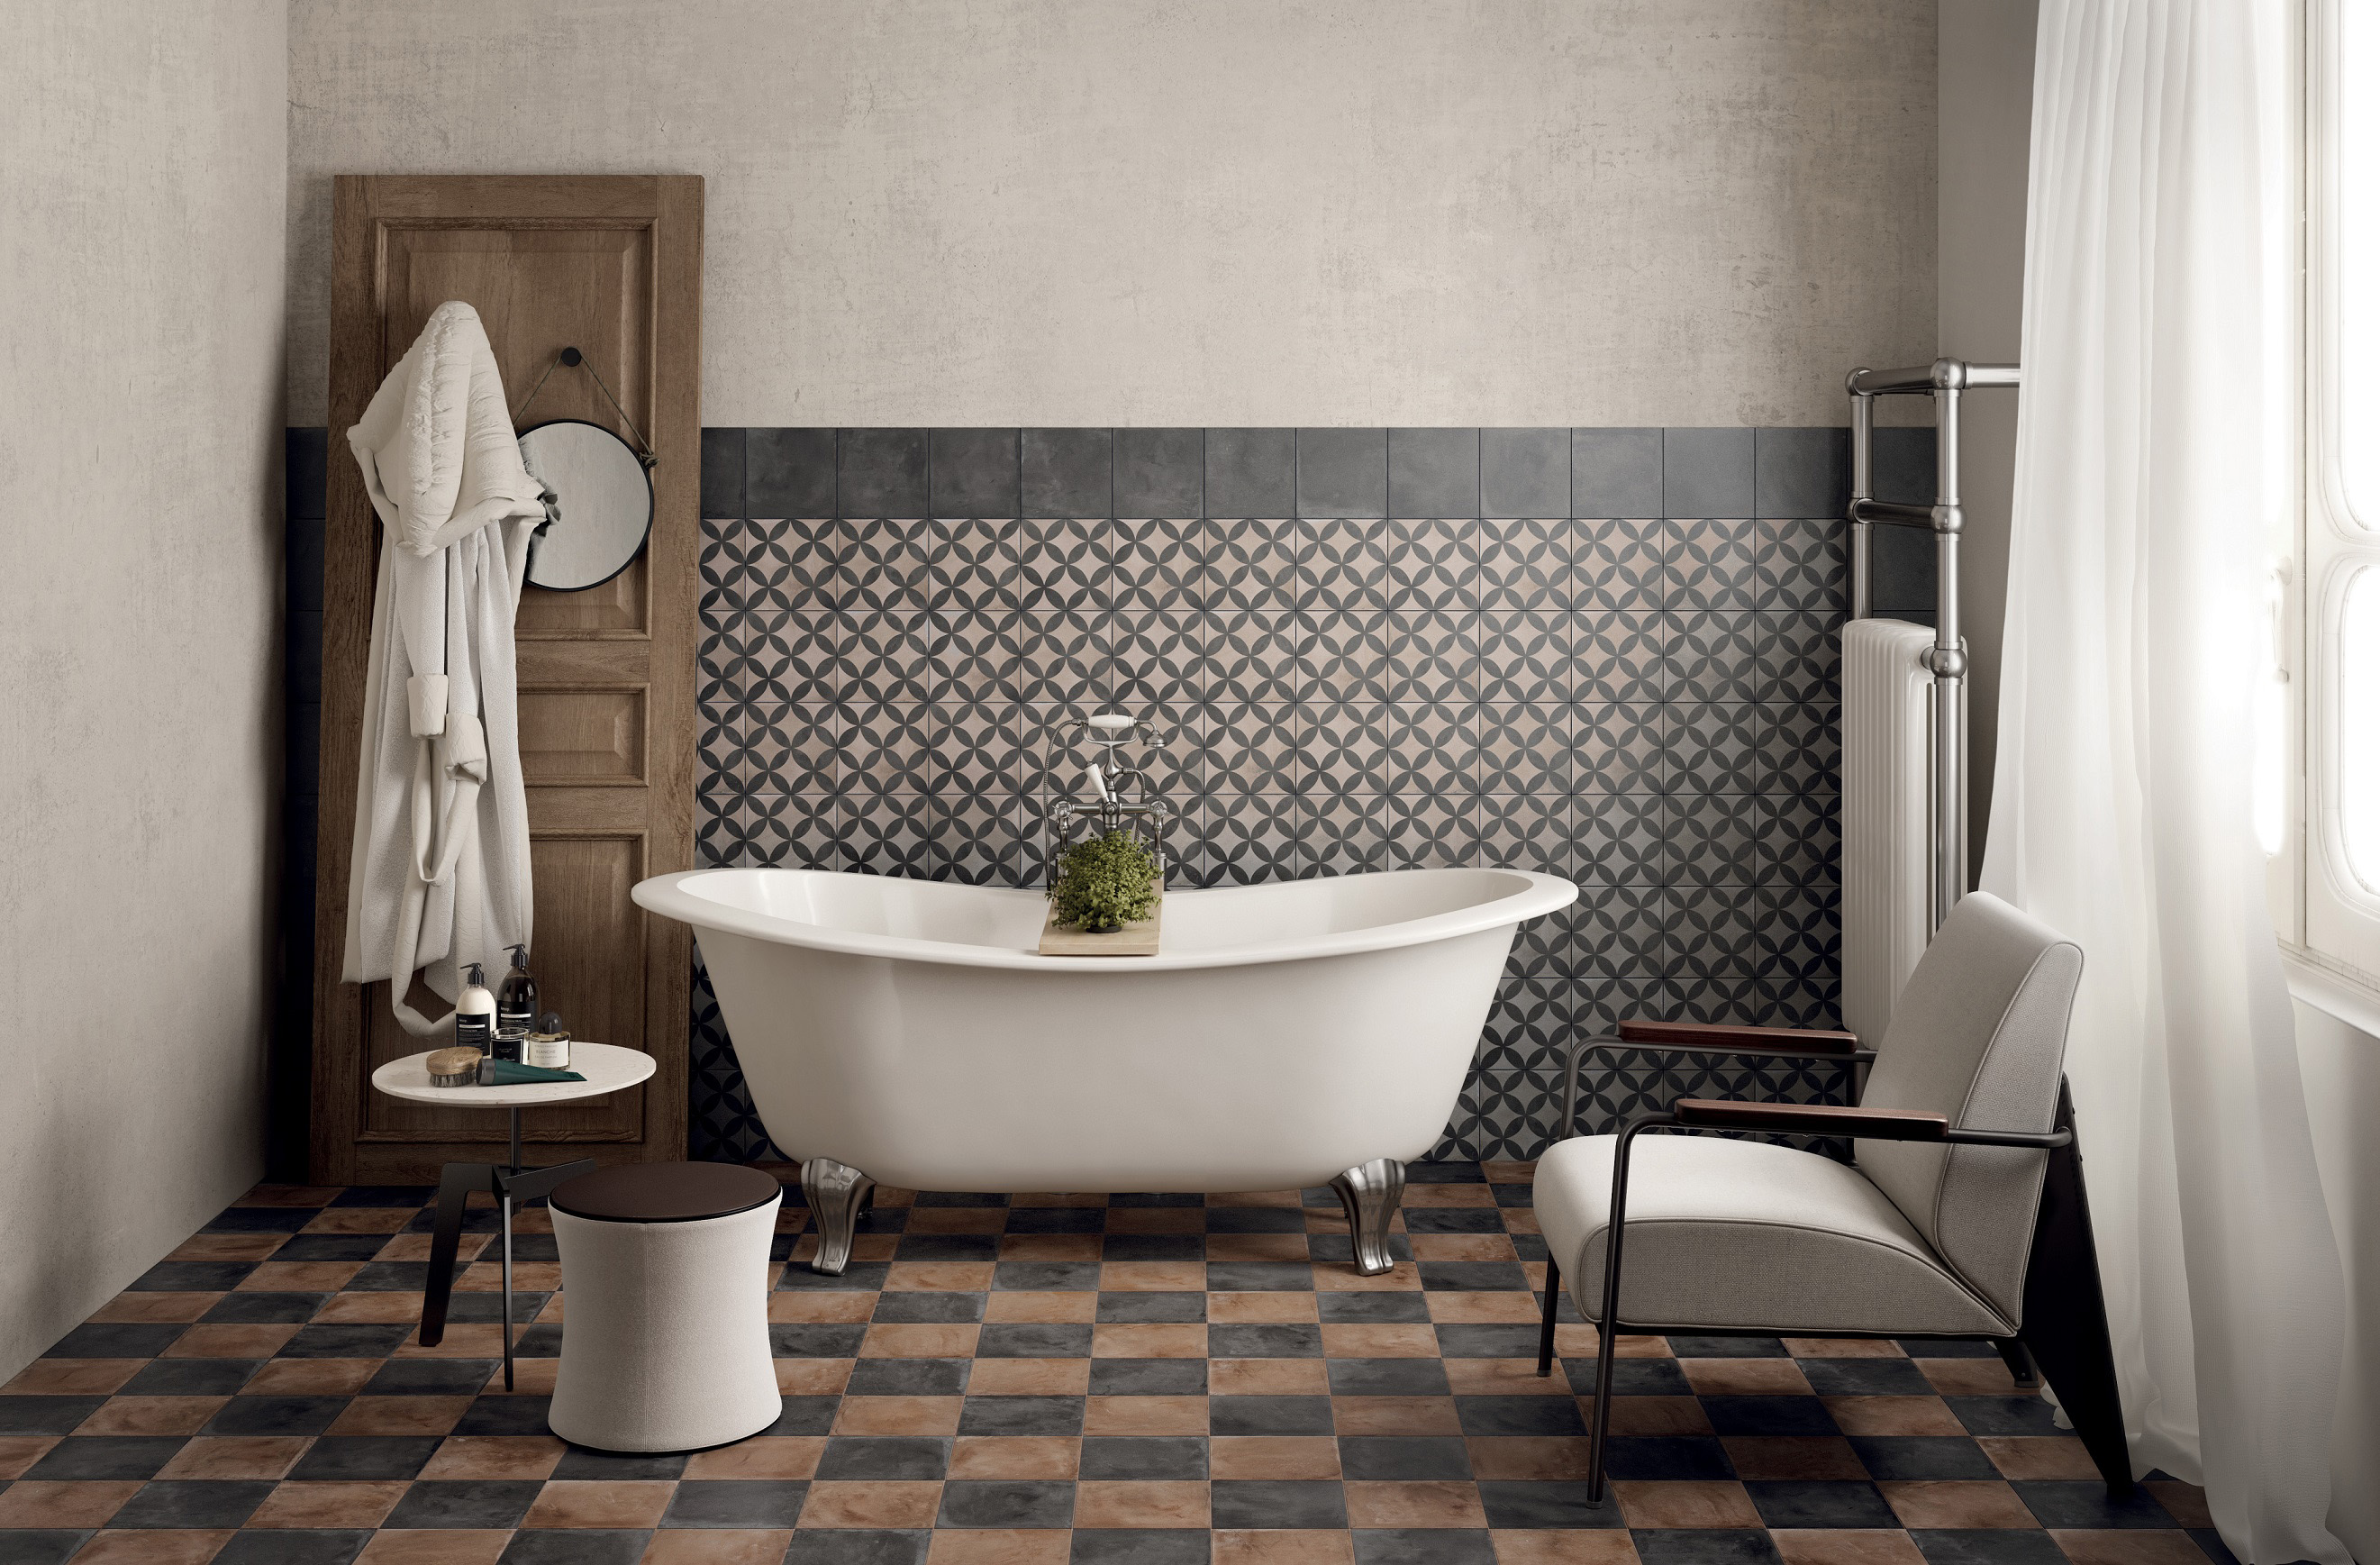 Best Tile Cleaner 6 Smart Picks To, Best Bathroom Tile Grout Cleaner Uk